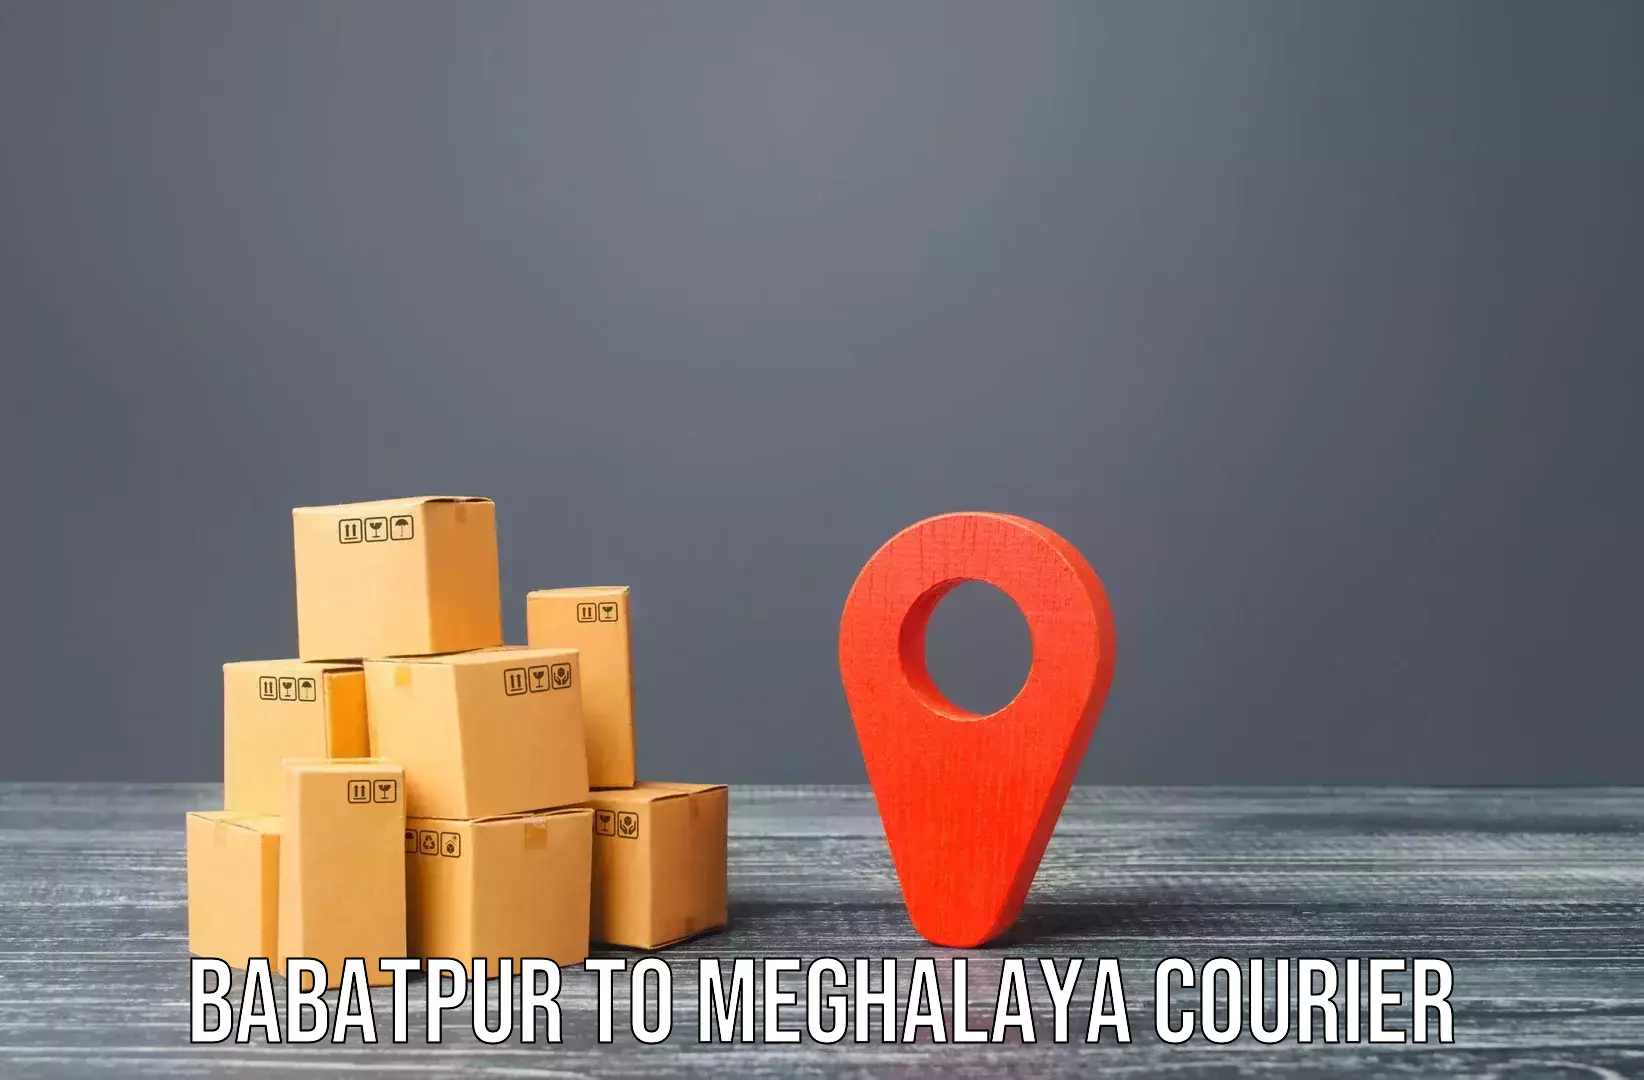 Furniture transport experts Babatpur to Meghalaya